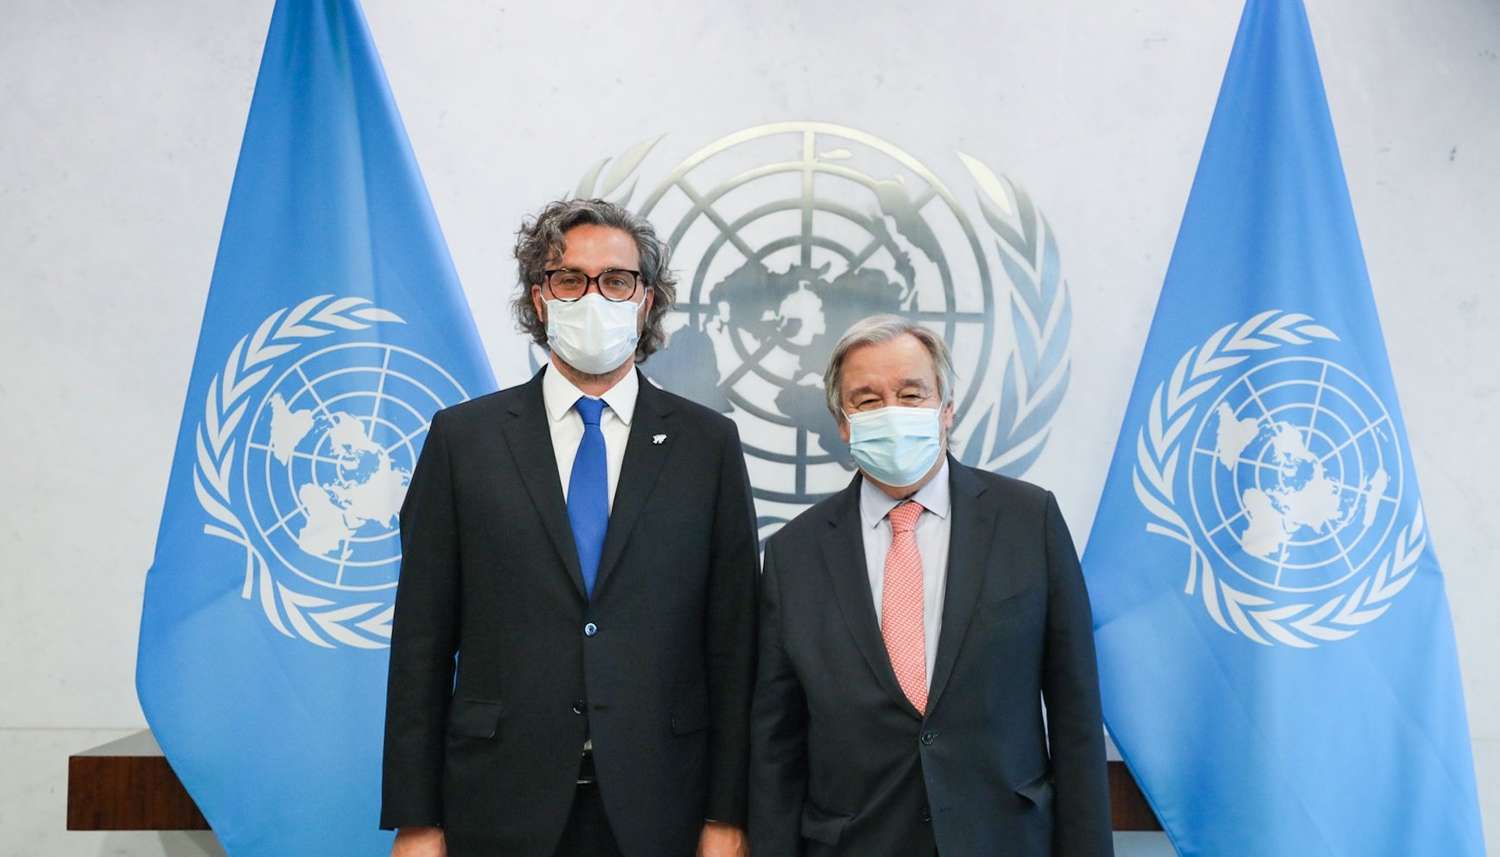 Cafiero reclamó en la ONU la intervención de Guterres para retomar las negociaciones por las Malvinas